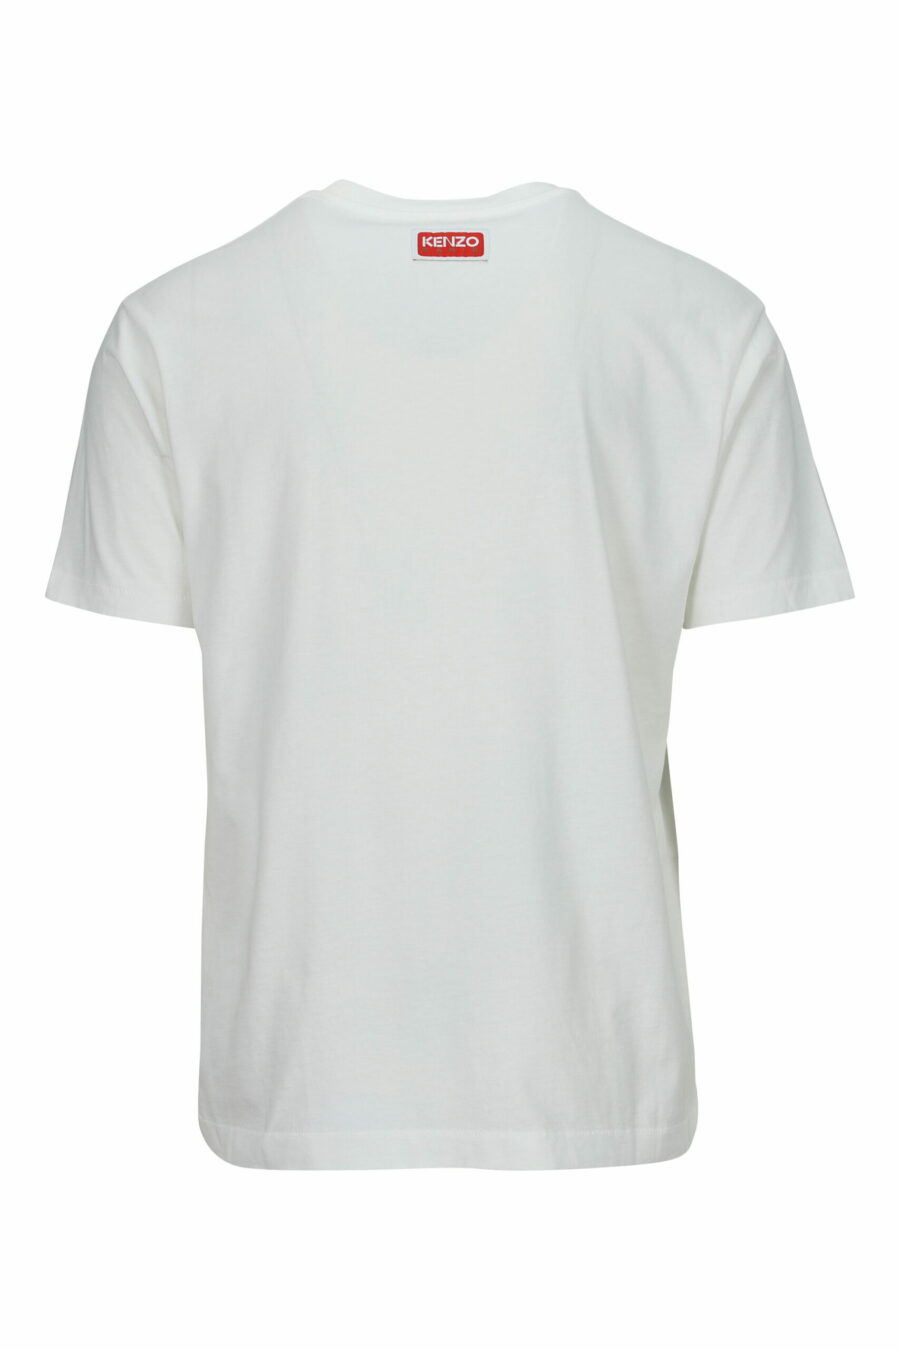 Weißes T-Shirt in Übergröße mit großem, geprägtem Tiger-Logo - 3612230568013 1 skaliert